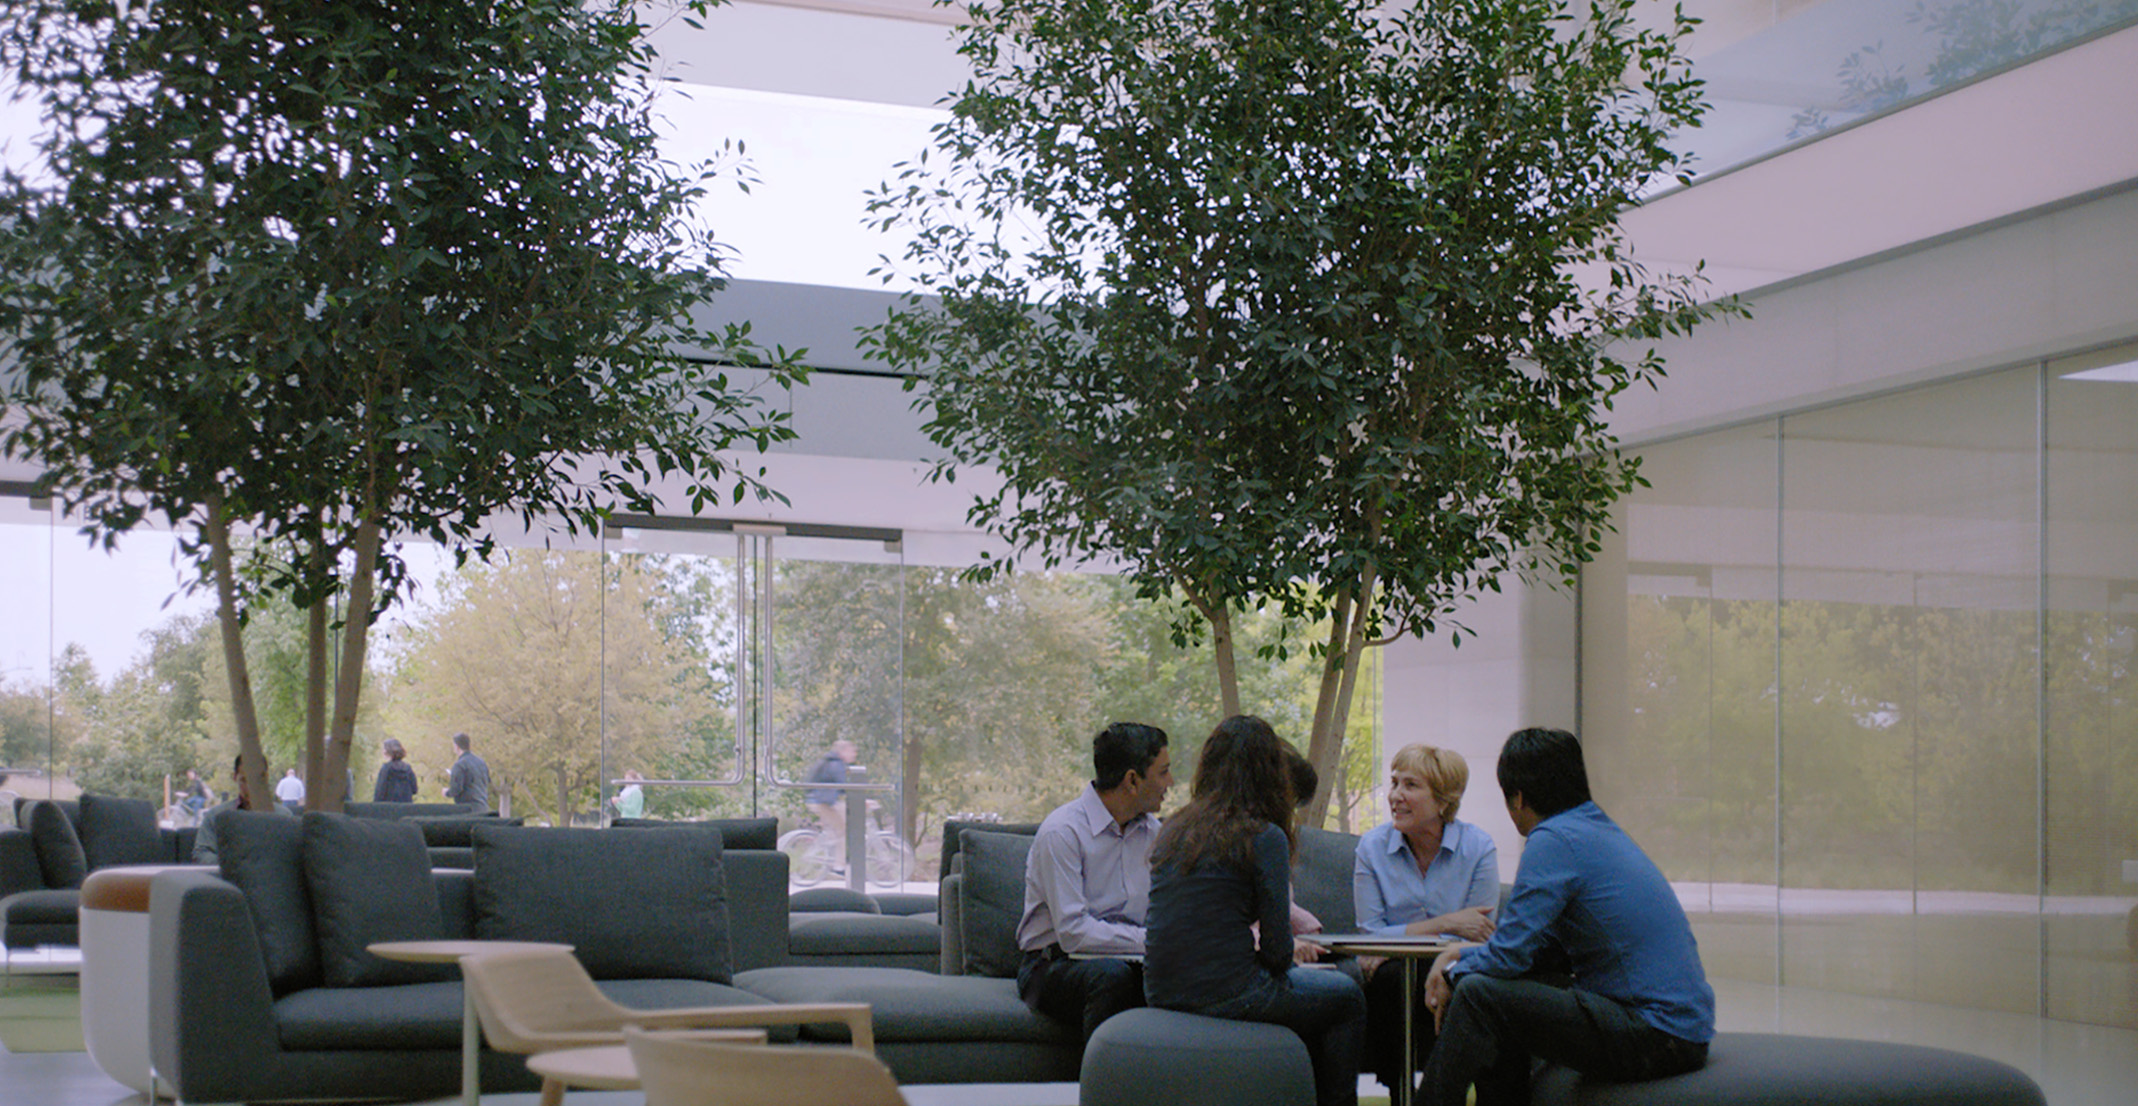 다른 Apple 직원들과 함께 앉아 있는 자연 언어 처리 팀 매니저 줄리아